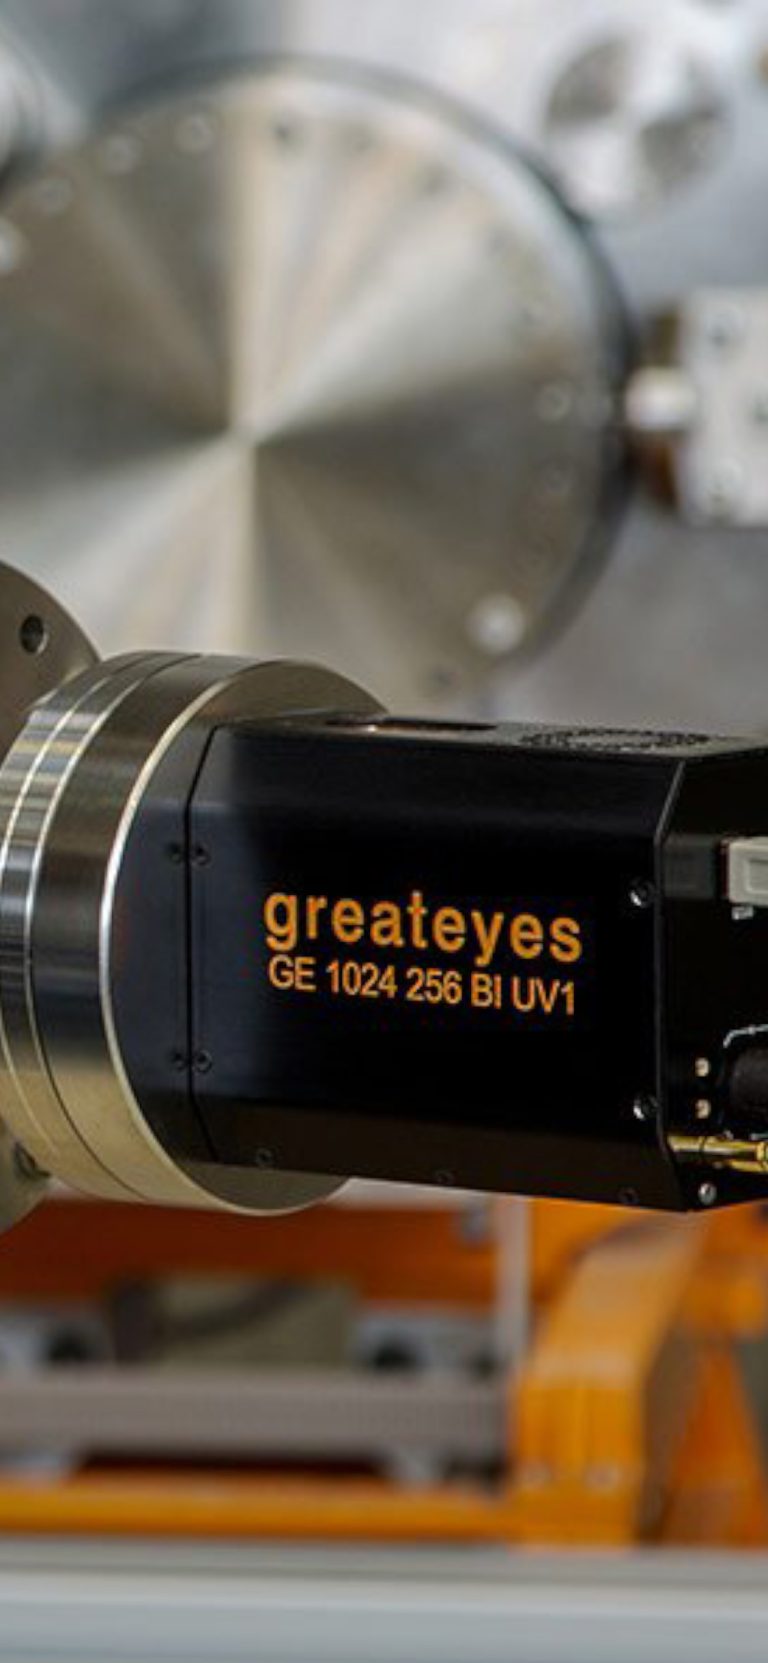 Greateye scientific camera